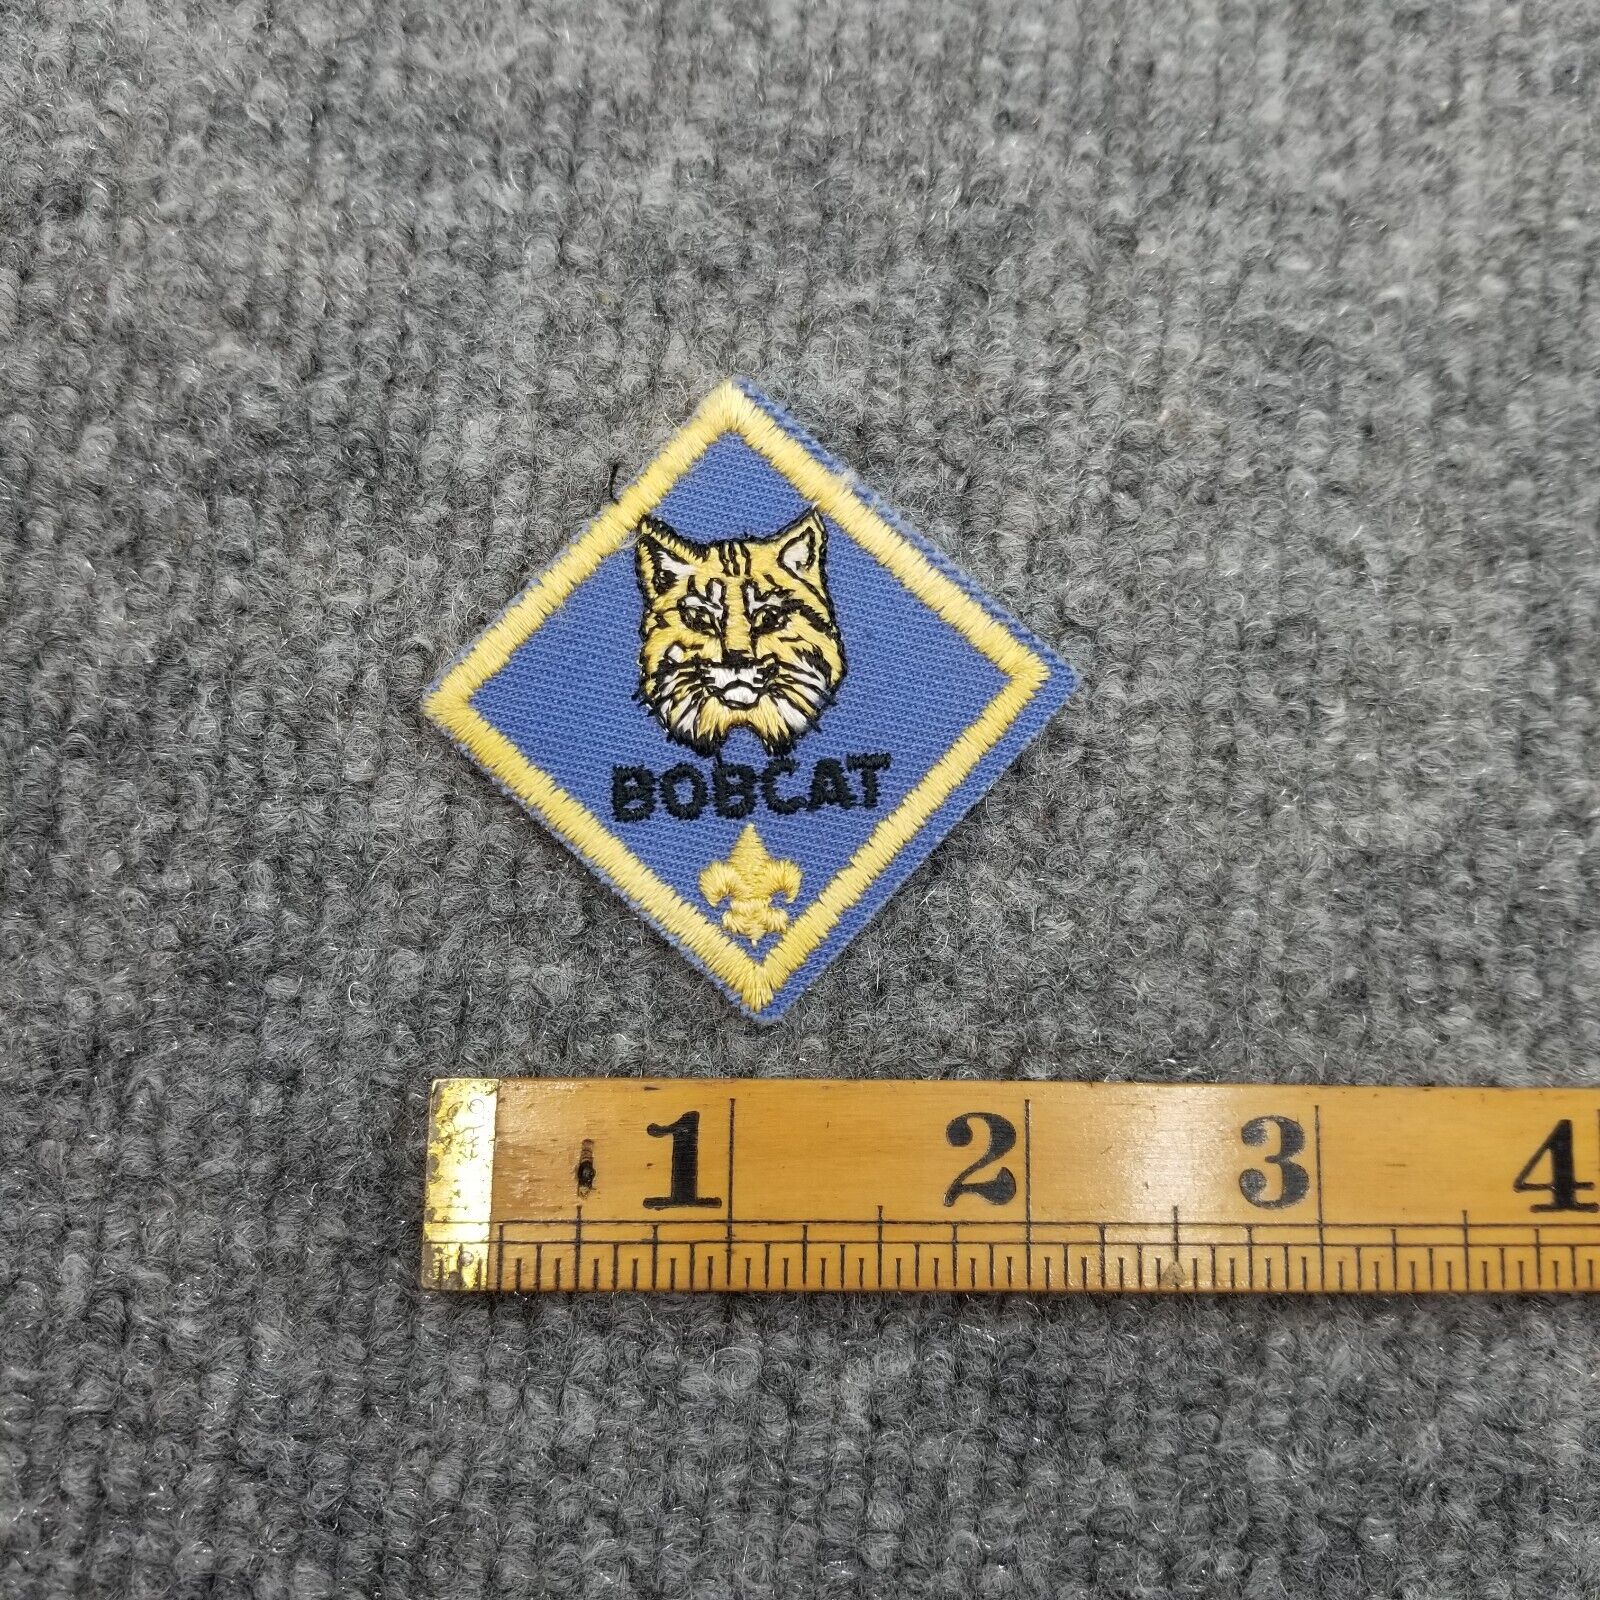 Vintage Bobcat Scout Patch Boy Cub Scouts BSA R0